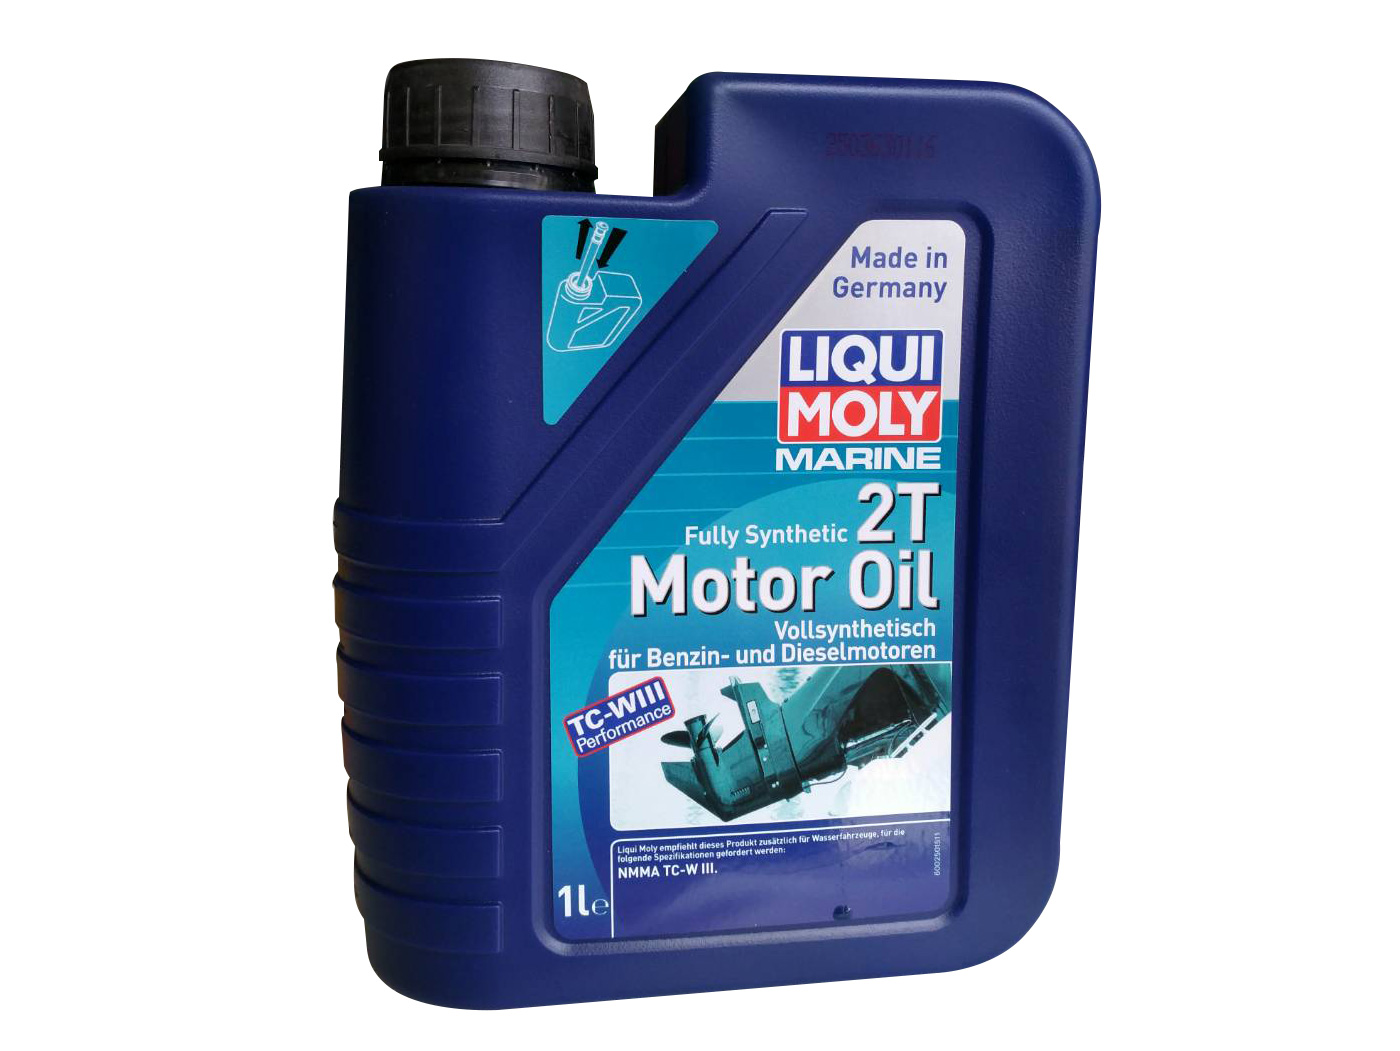 LIQI MOLY 2T MOTOR OIL